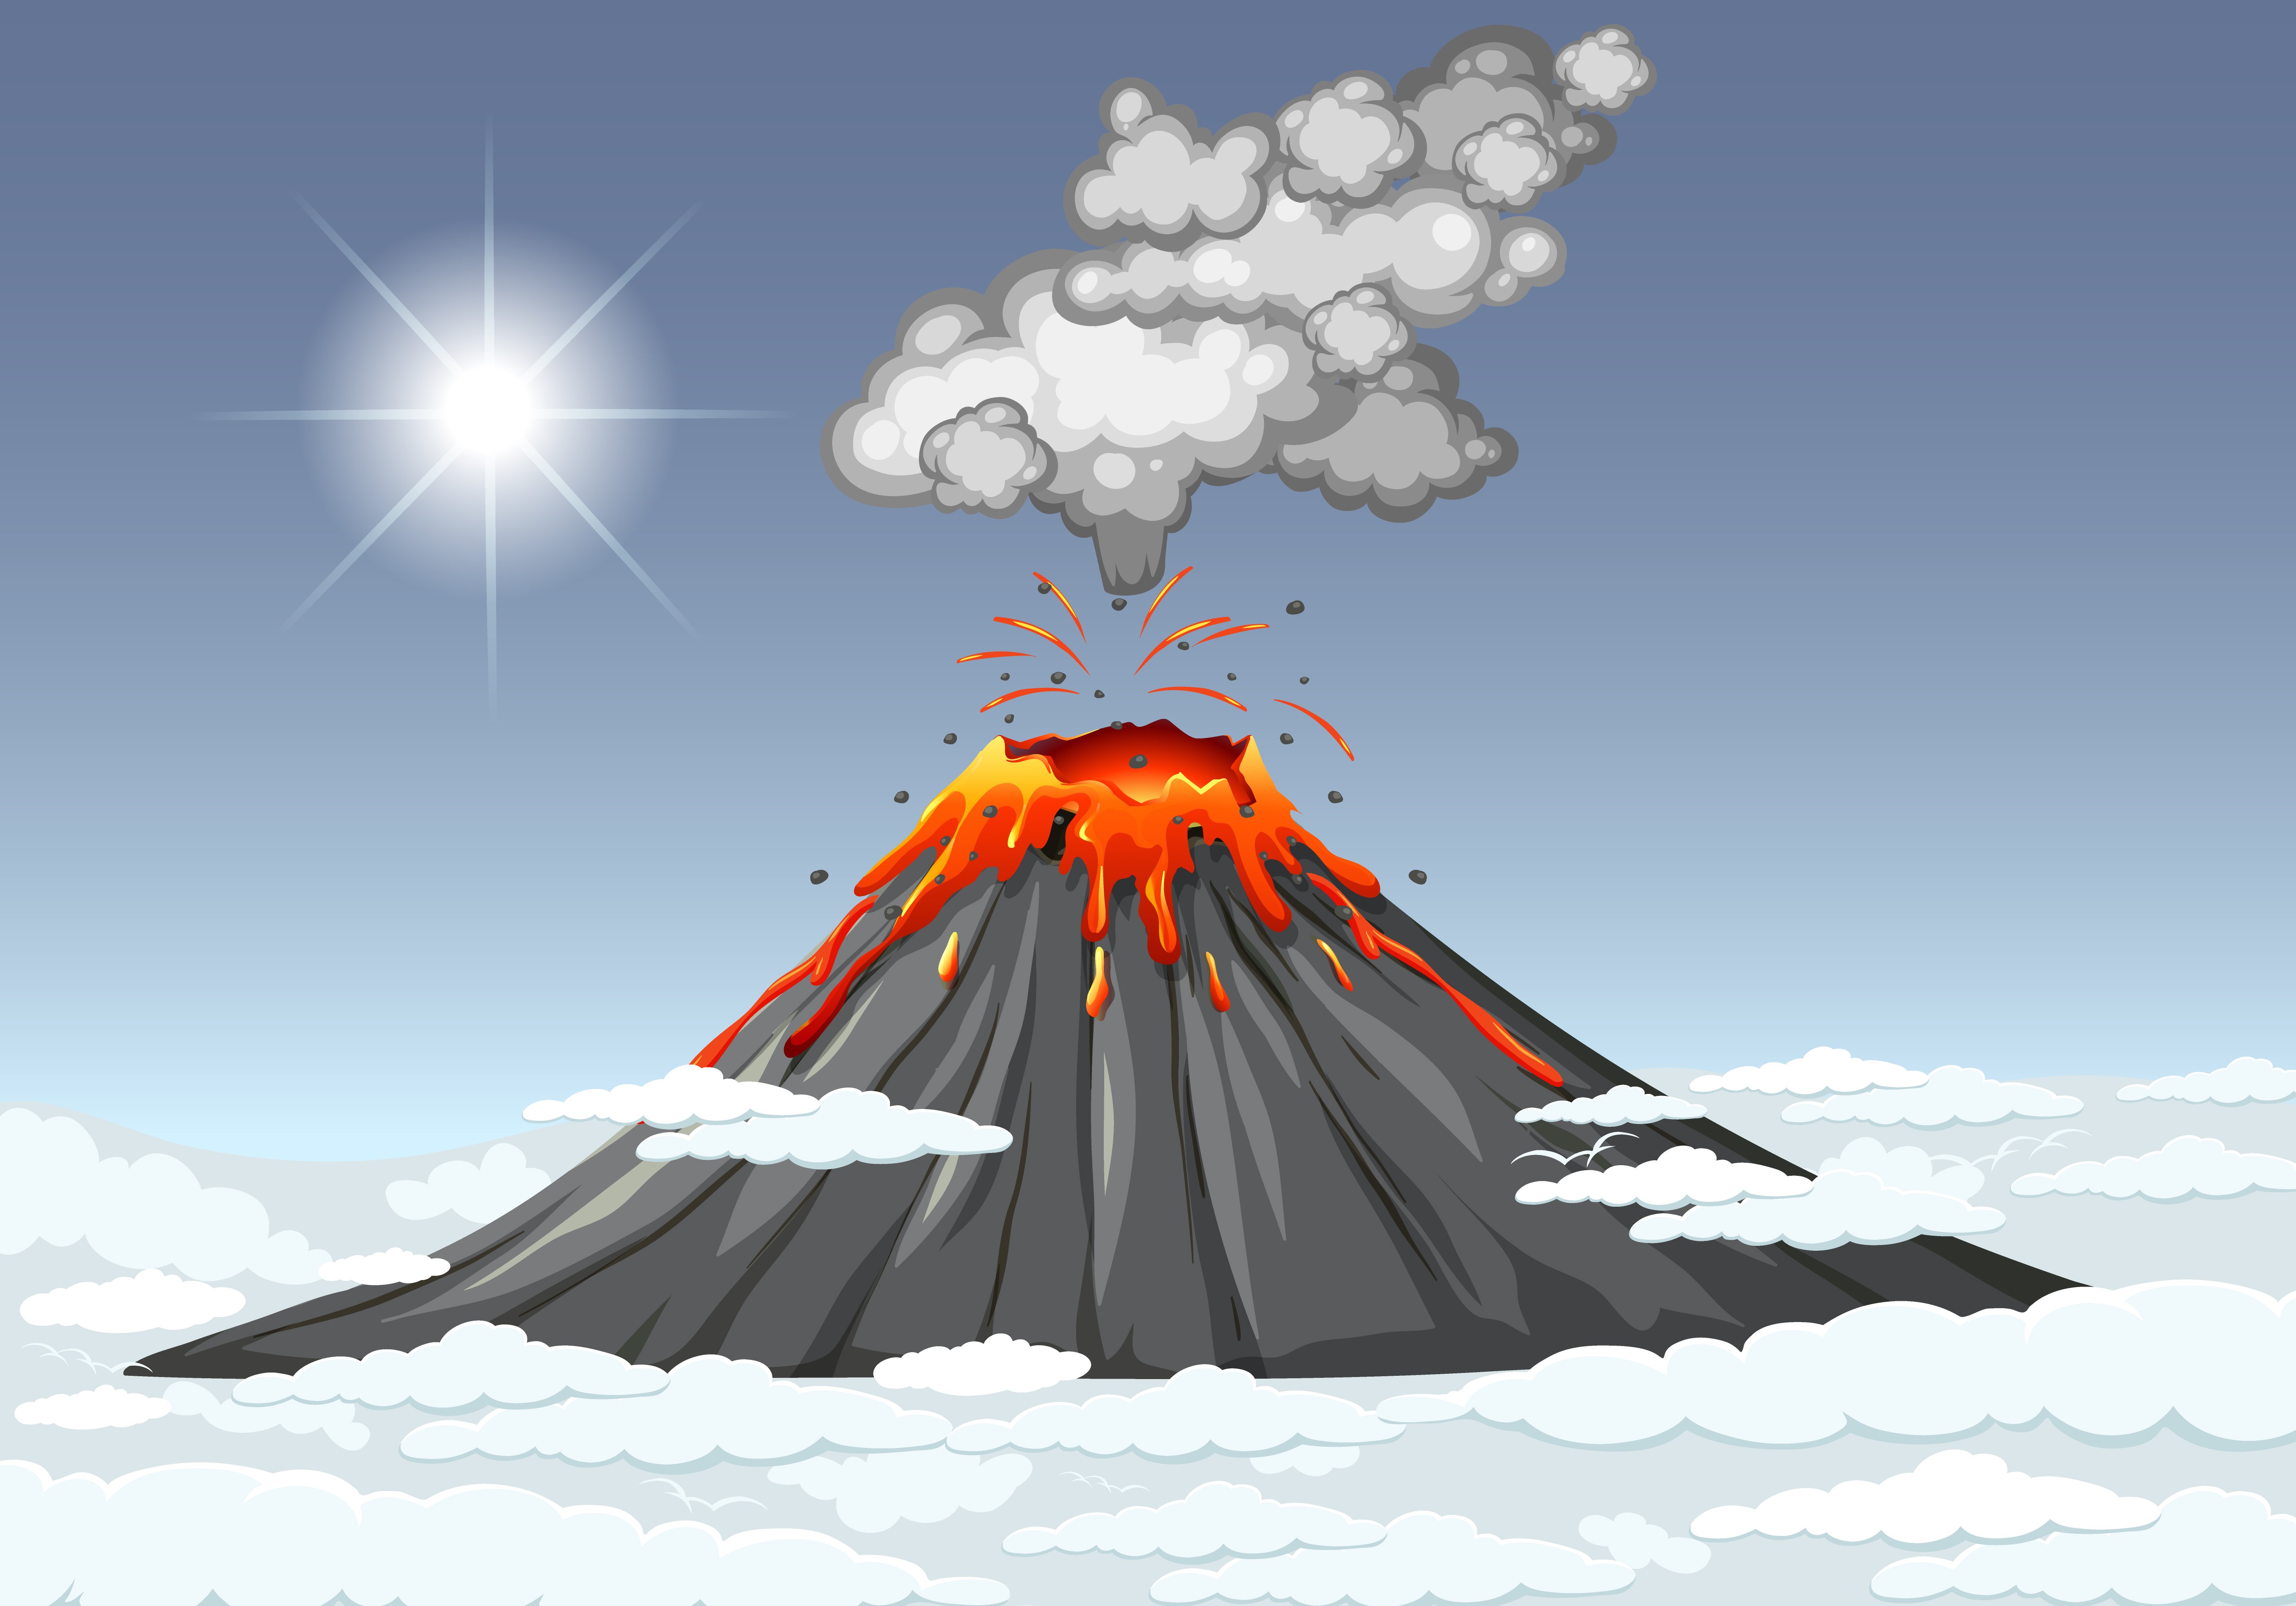 Volcán Nevado del Ruíz